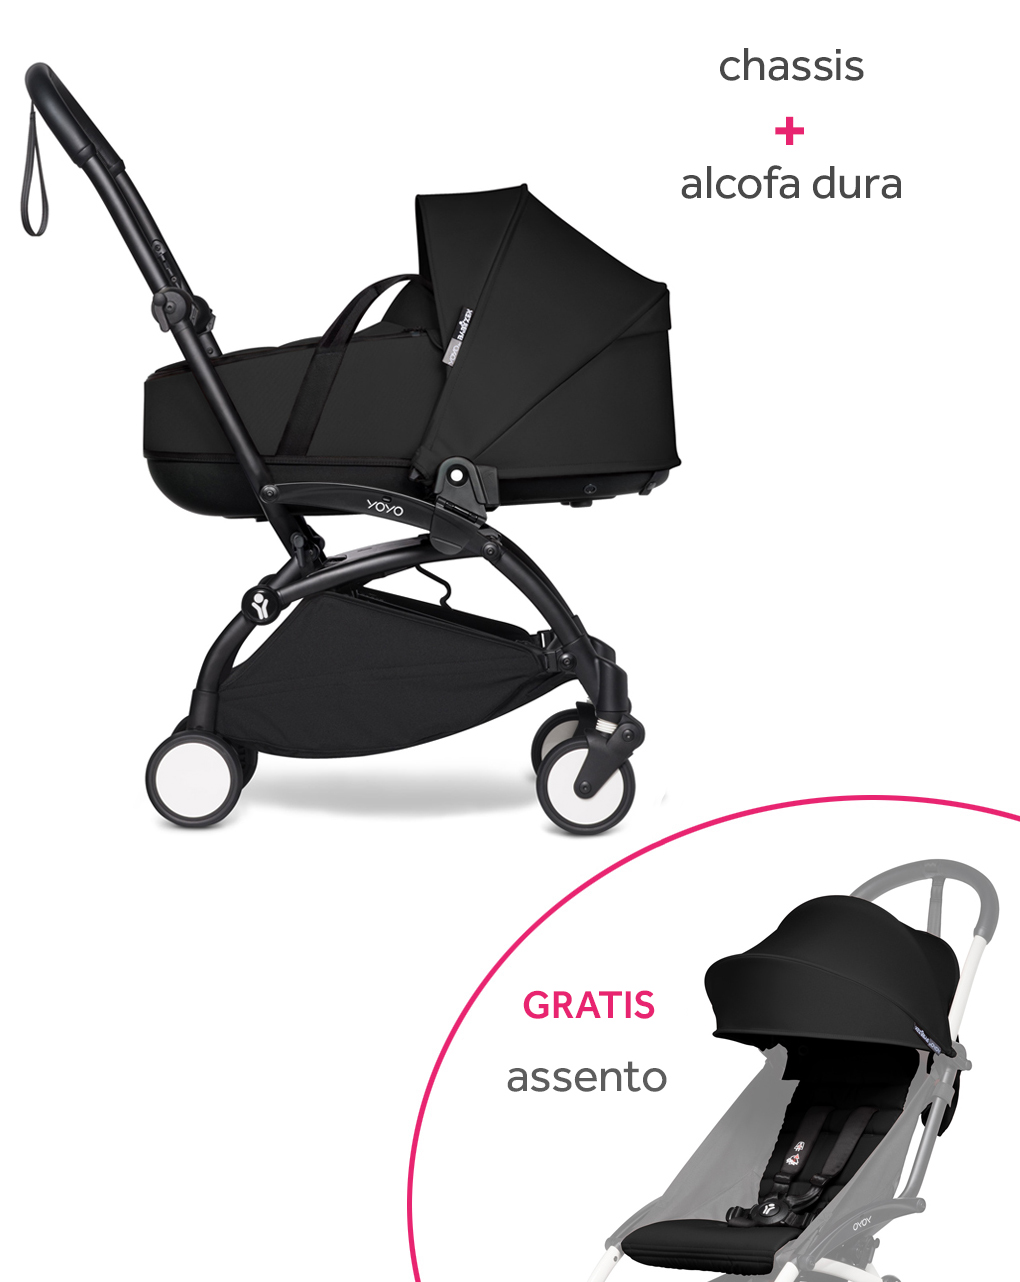 Yoyo² chassis babyzen black e alcofa dura black + assento black gratuito - Babyzen